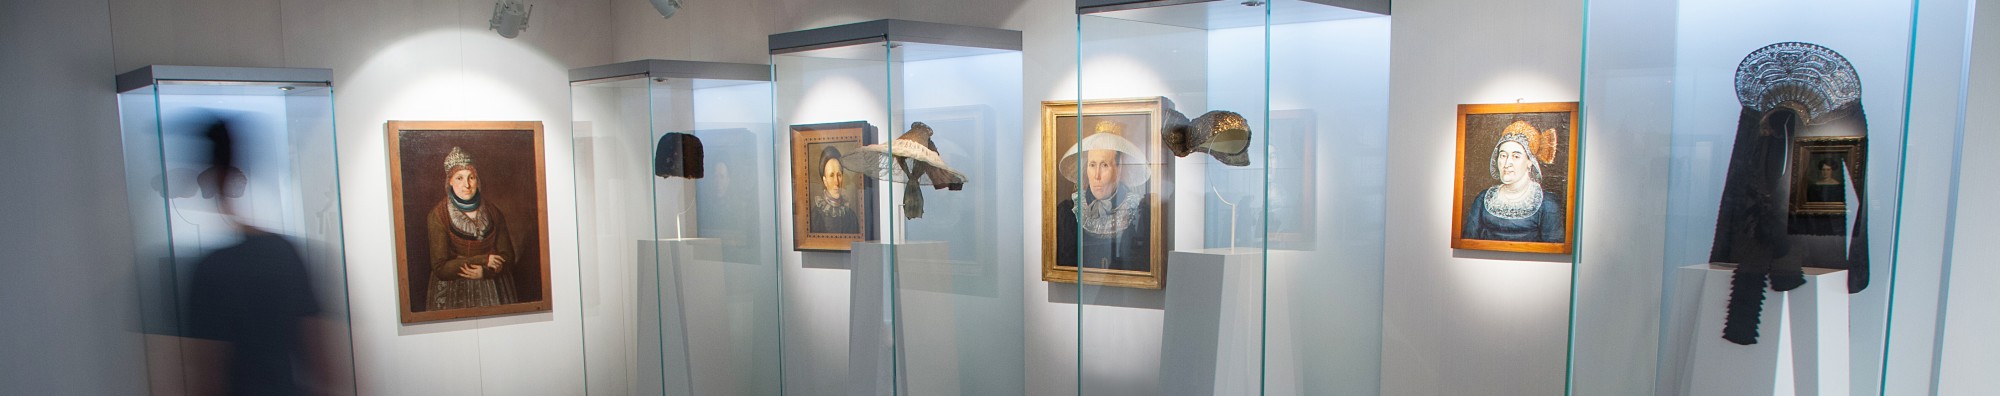 Blick in den Haubenraum: vier Vitrinen, in denen verschiedene Hauben ausgestellt sind. Dazwischen Gemälde von Frauen, die mit diesen/ähnlichen Hauben zu sehen sind.